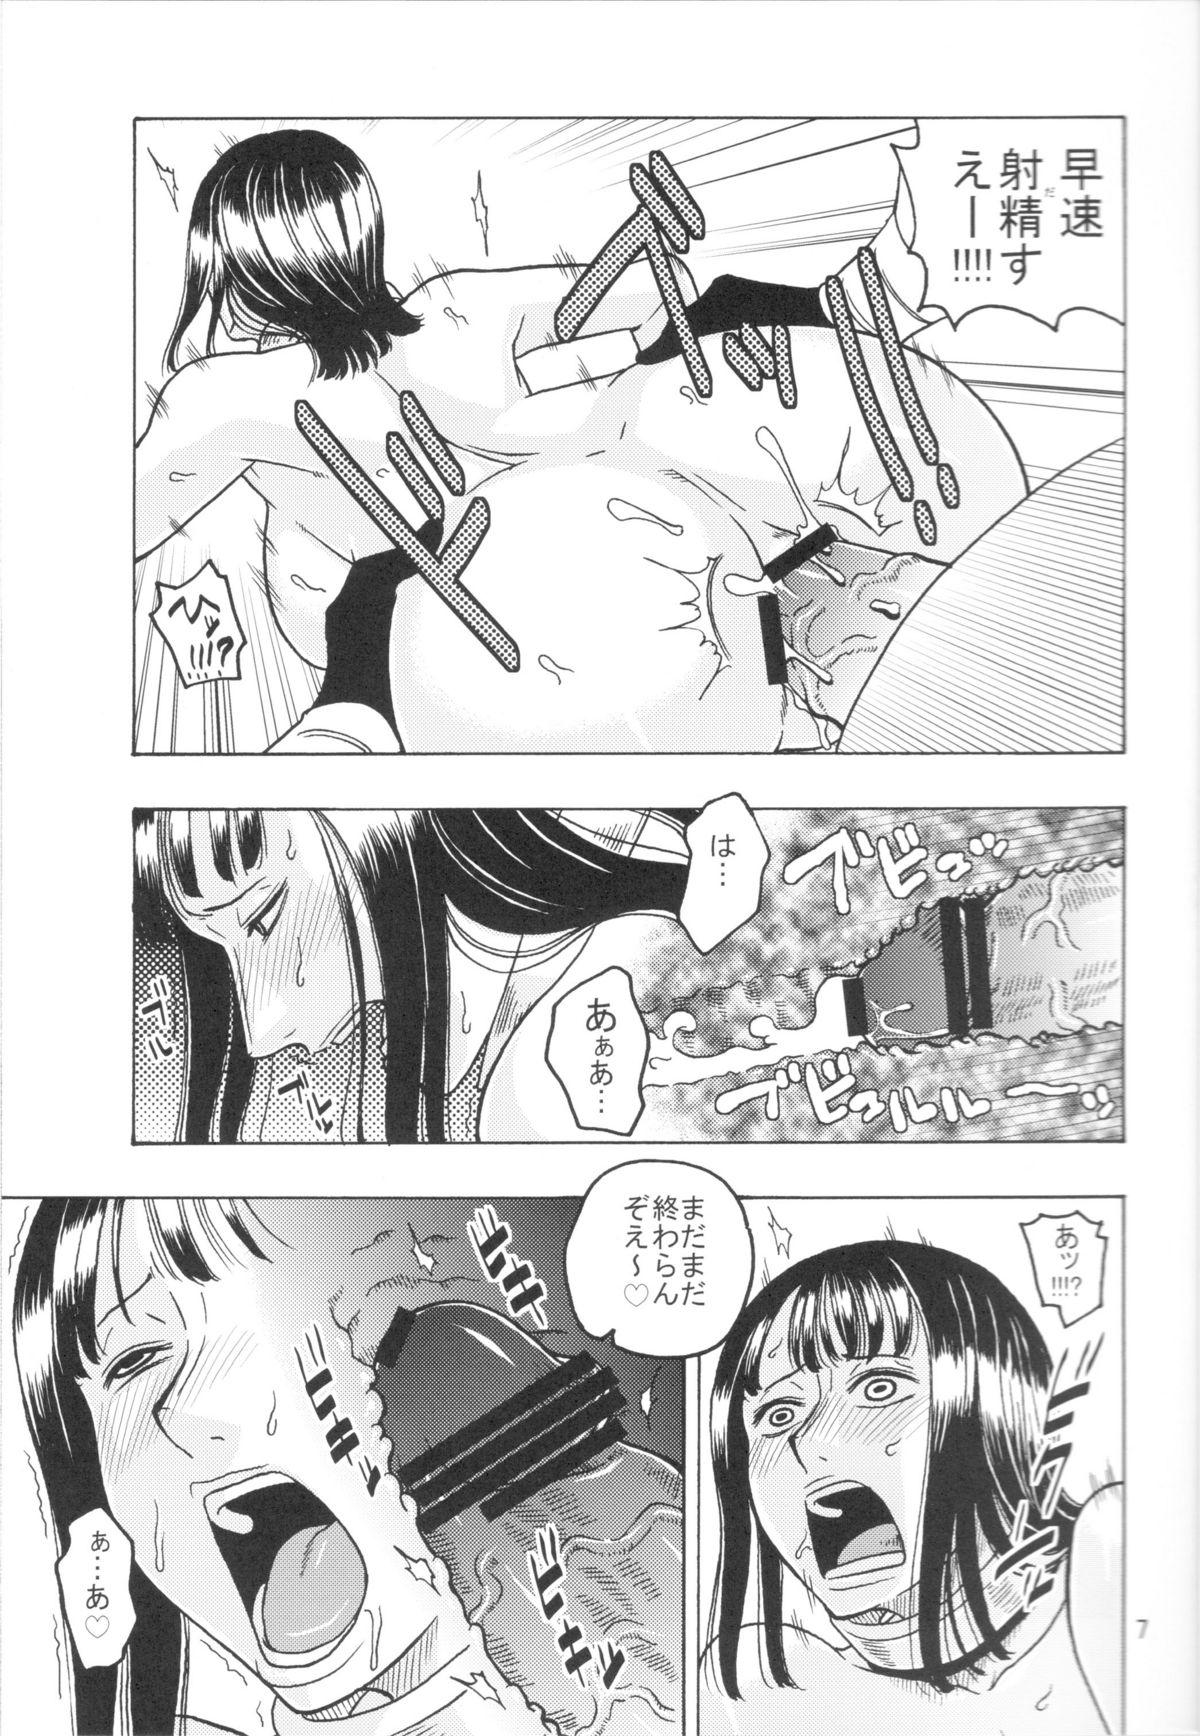 Wild Nami no Koukai Nisshi EX NamiRobi 3 - One piece Gaygroup - Page 8